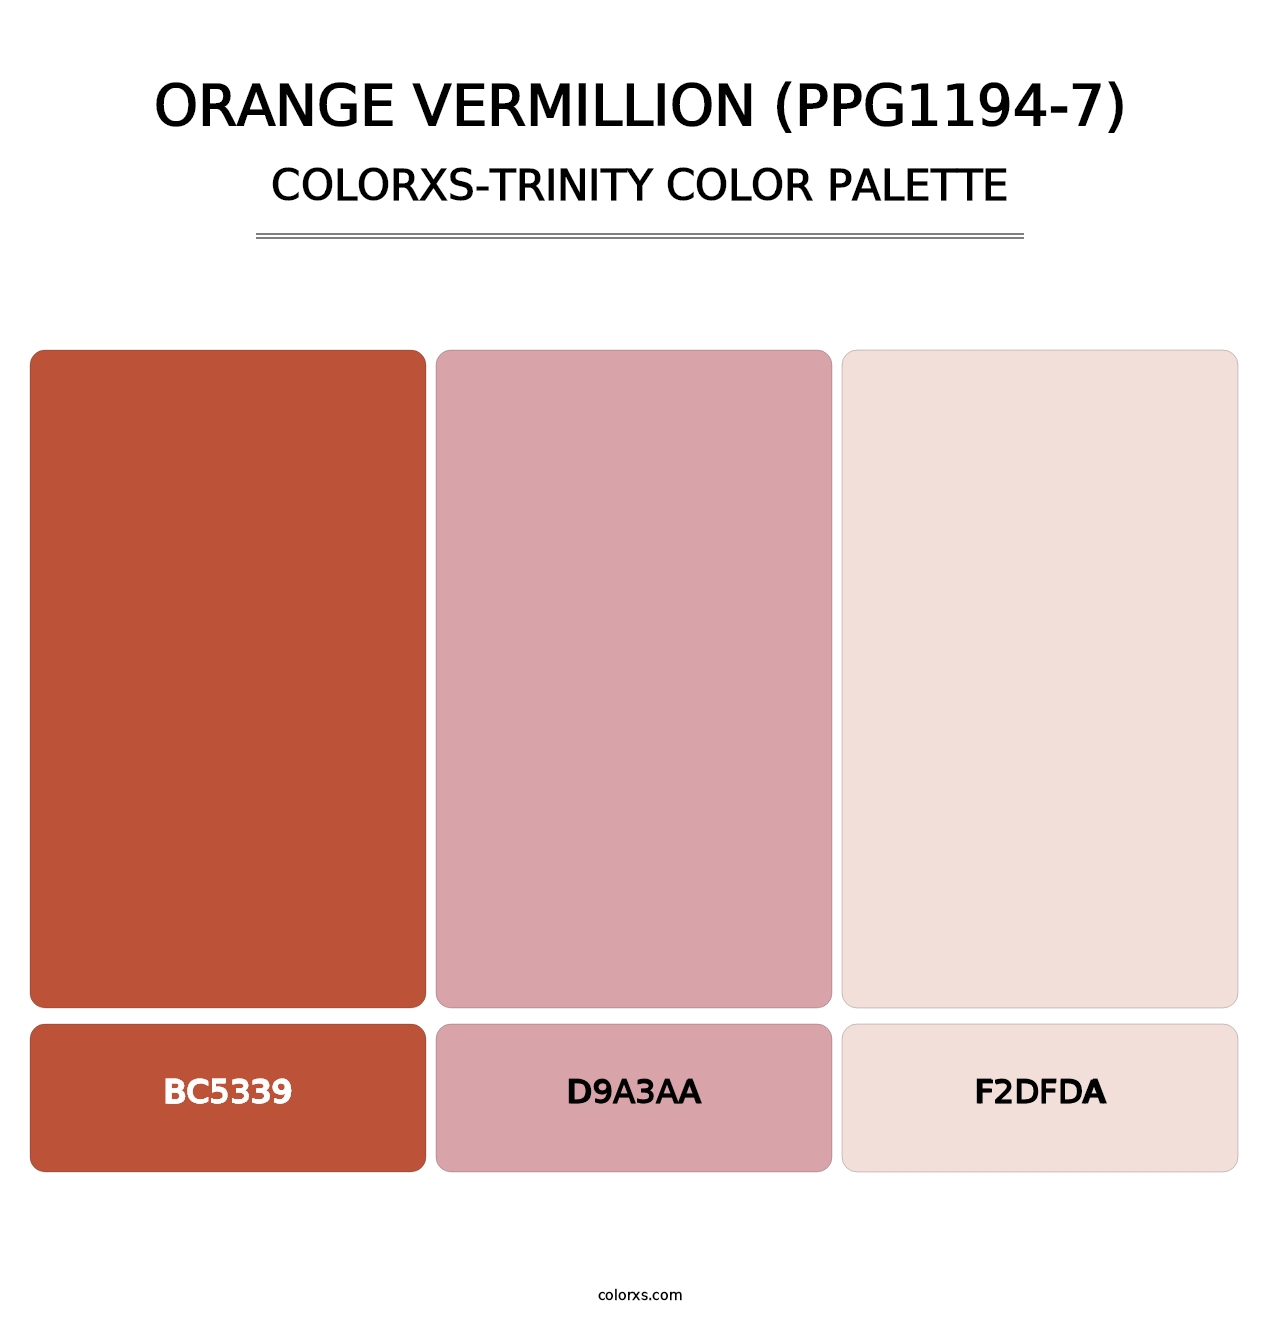 Orange Vermillion (PPG1194-7) - Colorxs Trinity Palette